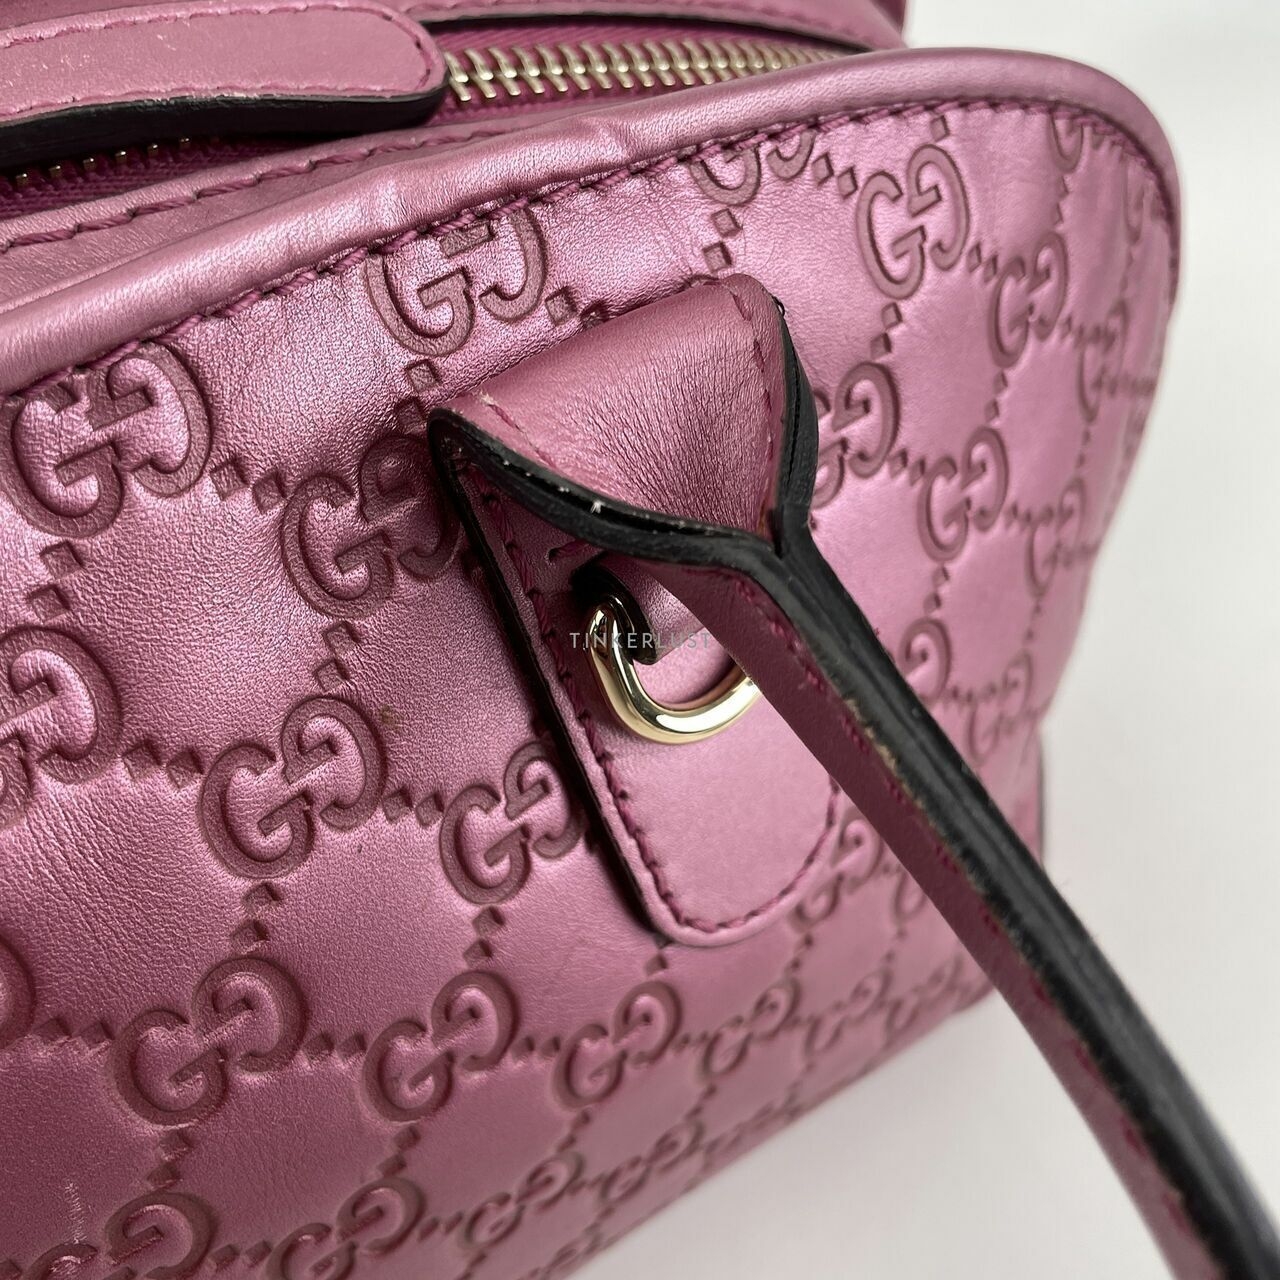 Gucci Metallic Pink Monogram Two Way Shoulder Bag